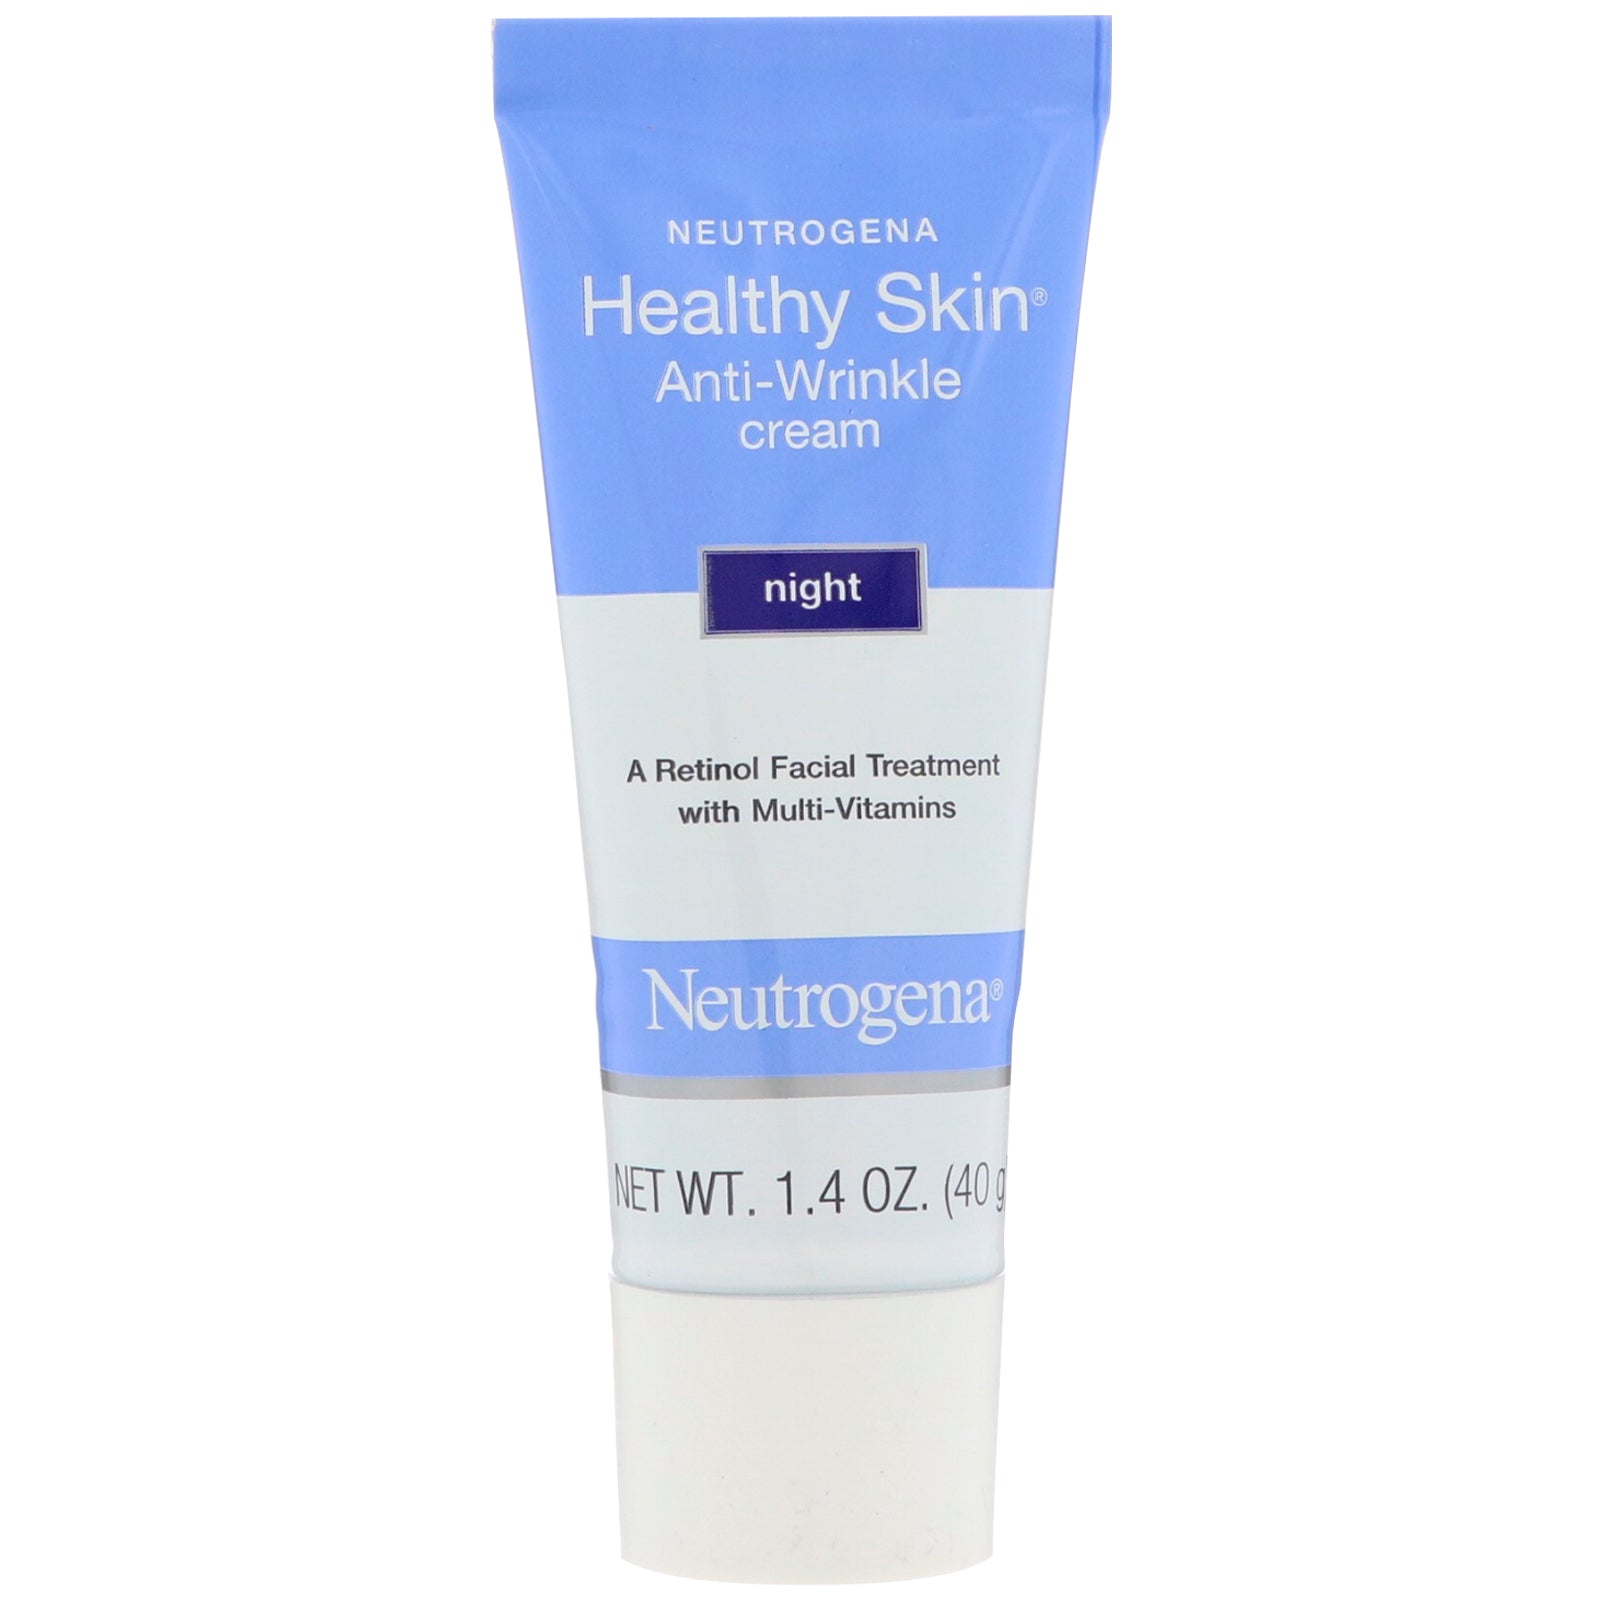 Neutrogena, Healthy Skin, Anti-Wrinkle Cream, Night, 1.4 oz (40 g)